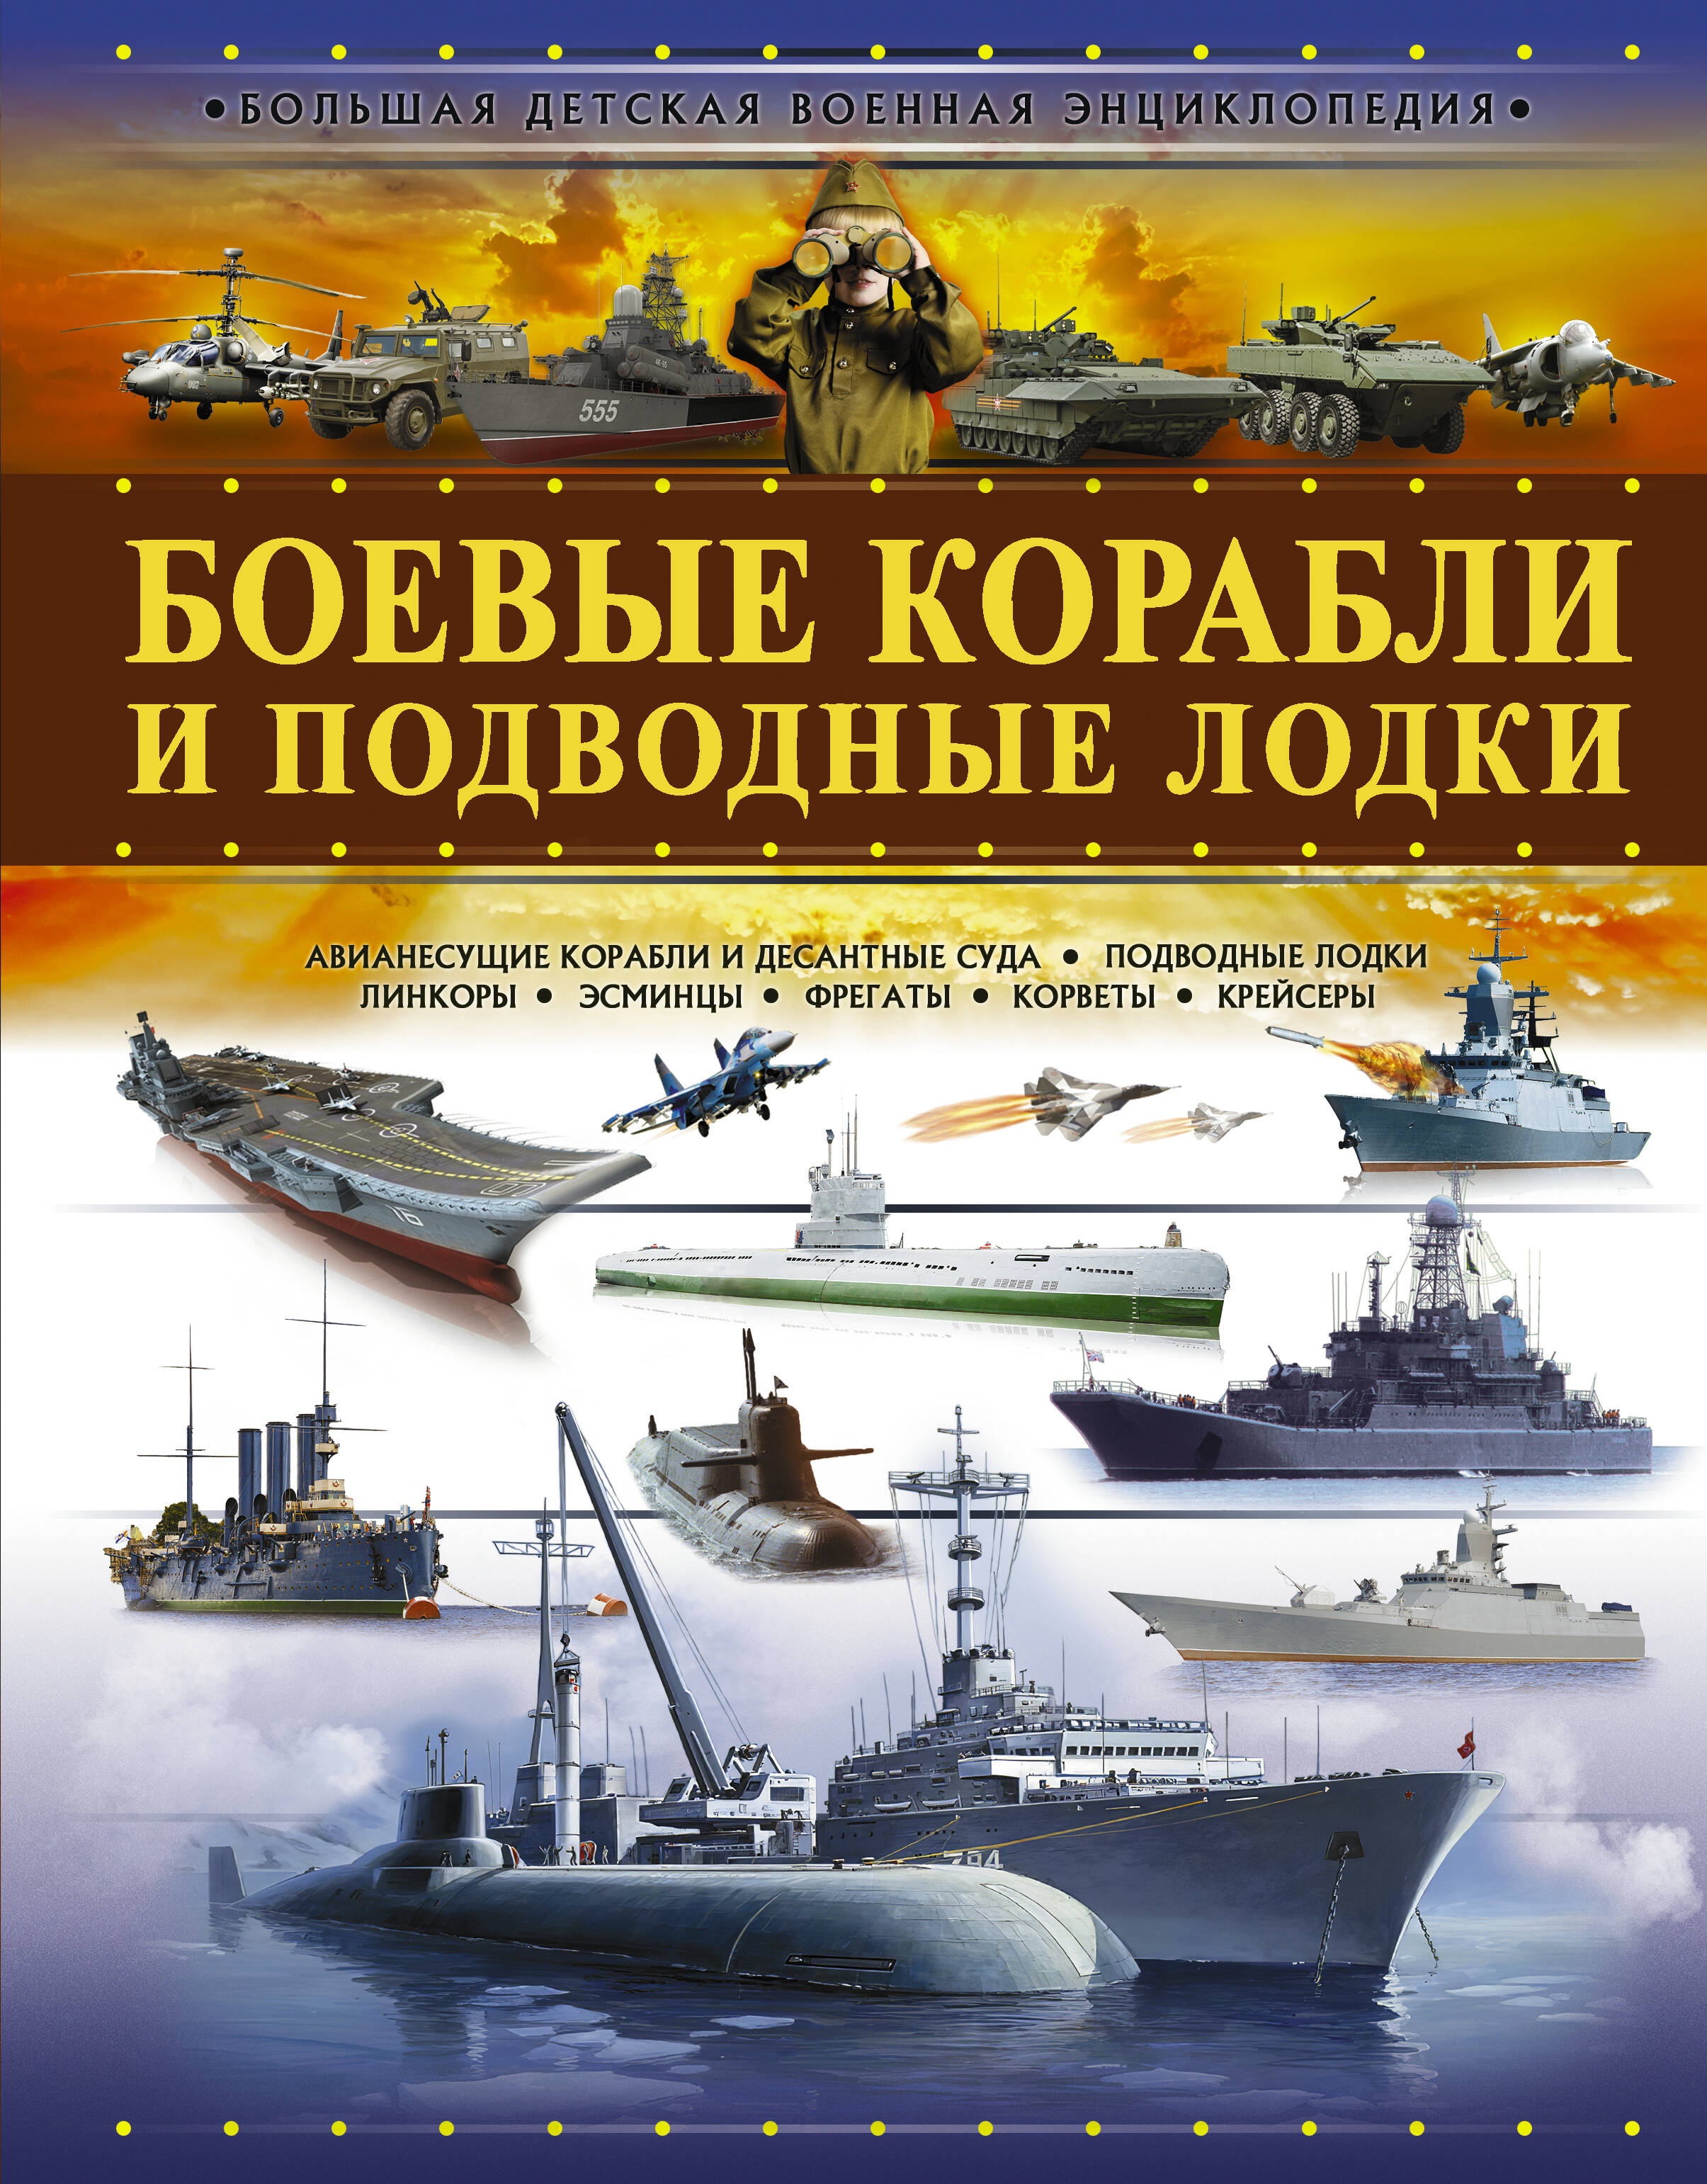 Мерников Андрей Геннадьевич - Боевые корабли и подводные лодки